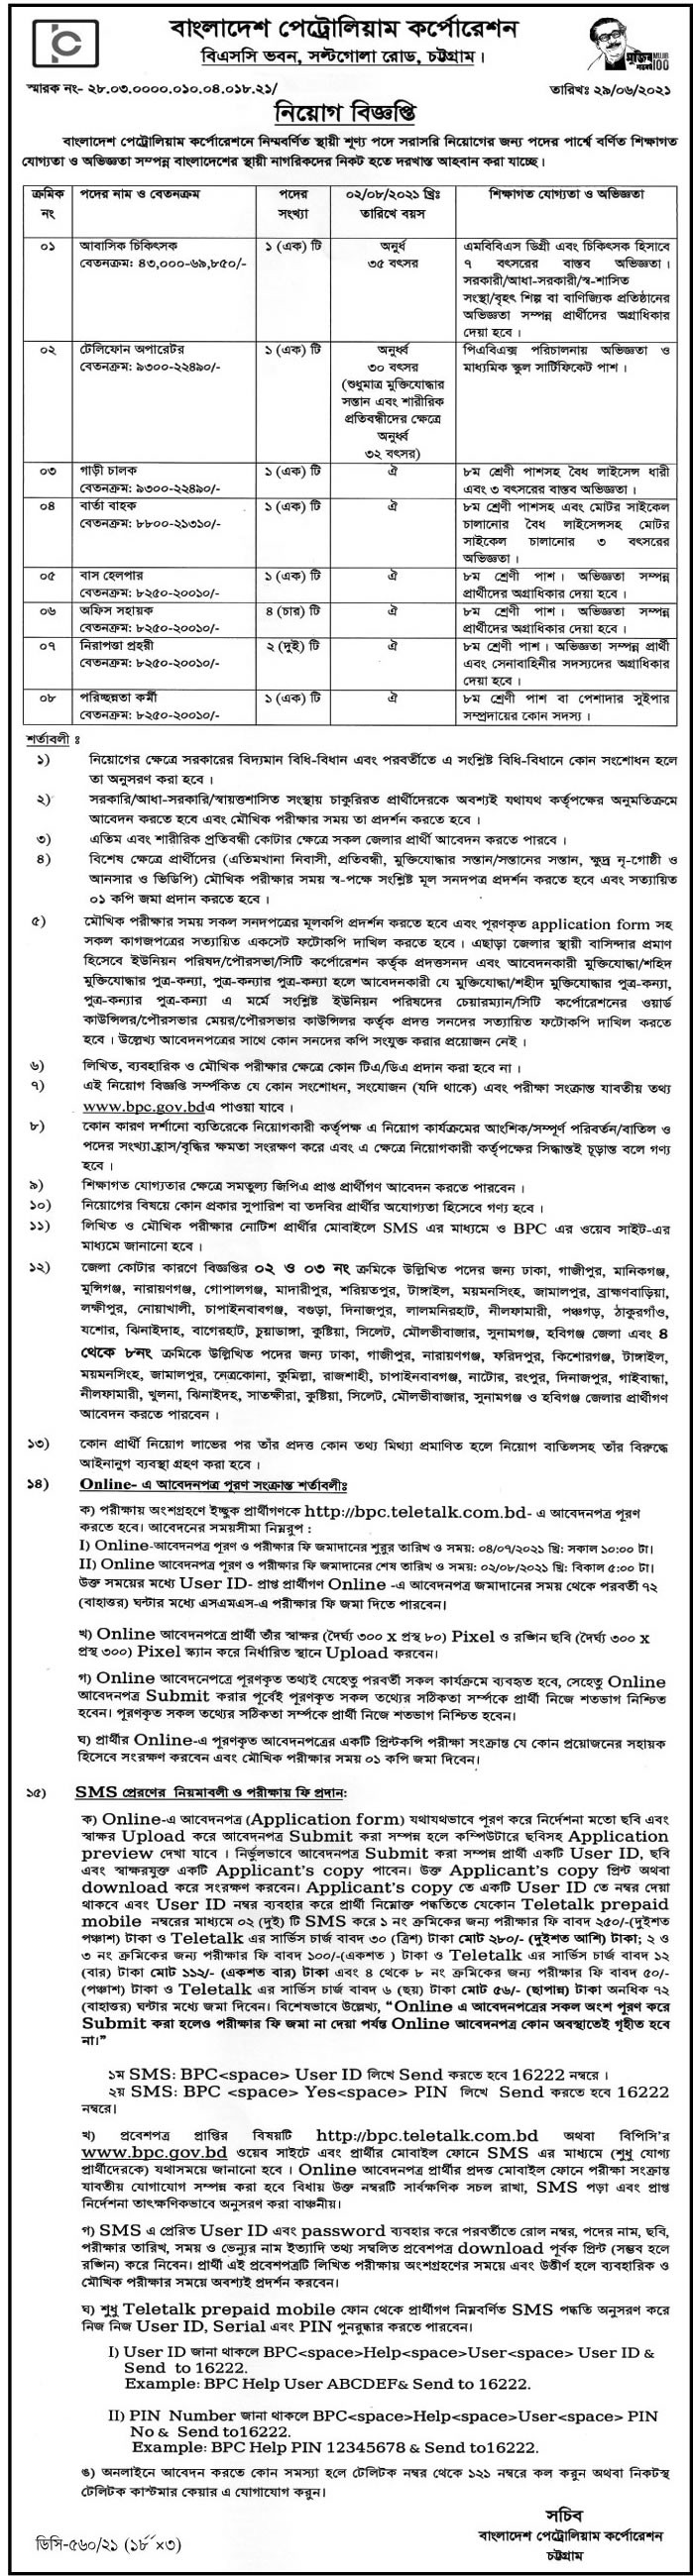 বাংলাদেশ পেট্রোলিয়াম কর্পোরেশন নিয়োগ বিজ্ঞপ্তি ২০২১ - Bangladesh Petroleum Corporation Job Circular 2021 - সরকারি চাকরির খবর ২০২১